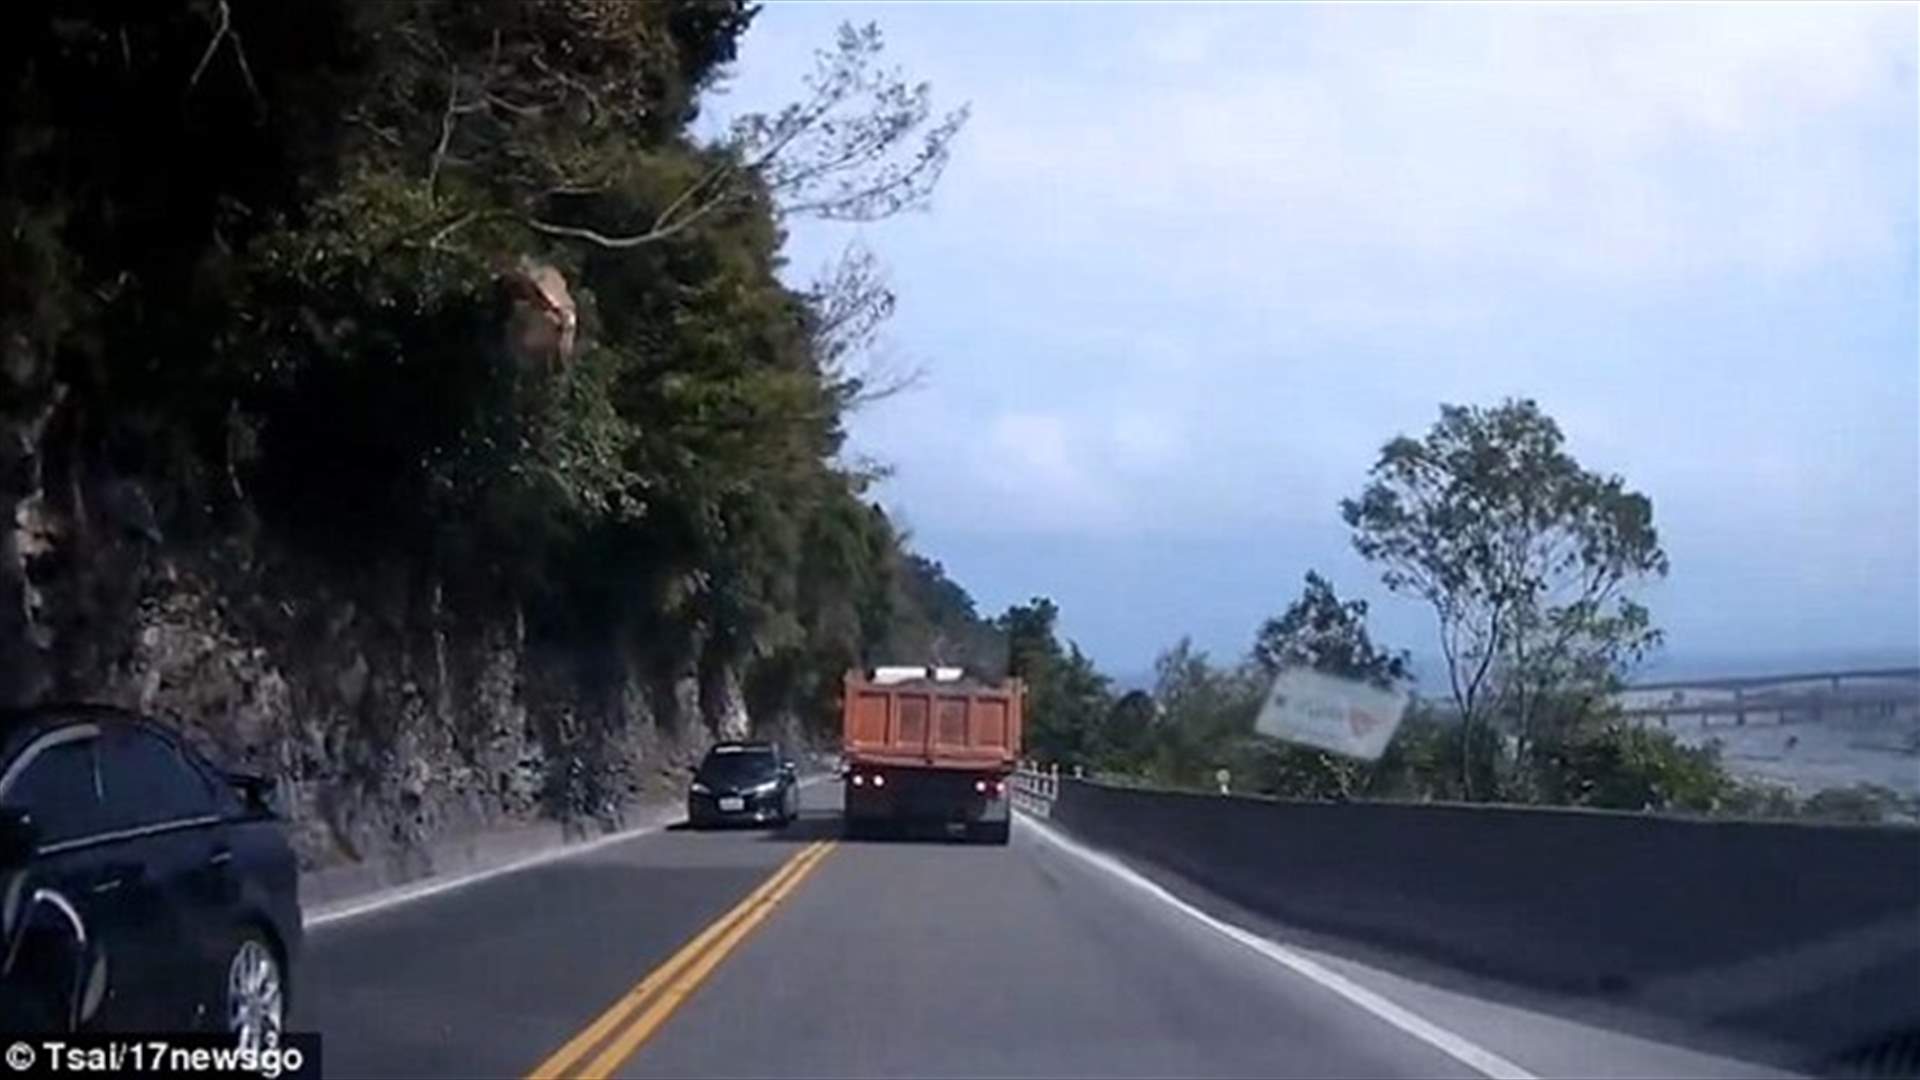 بالفيديو – كاميرا سيارته وثّقت نجاته من حادث مرعب على طريق سريع!